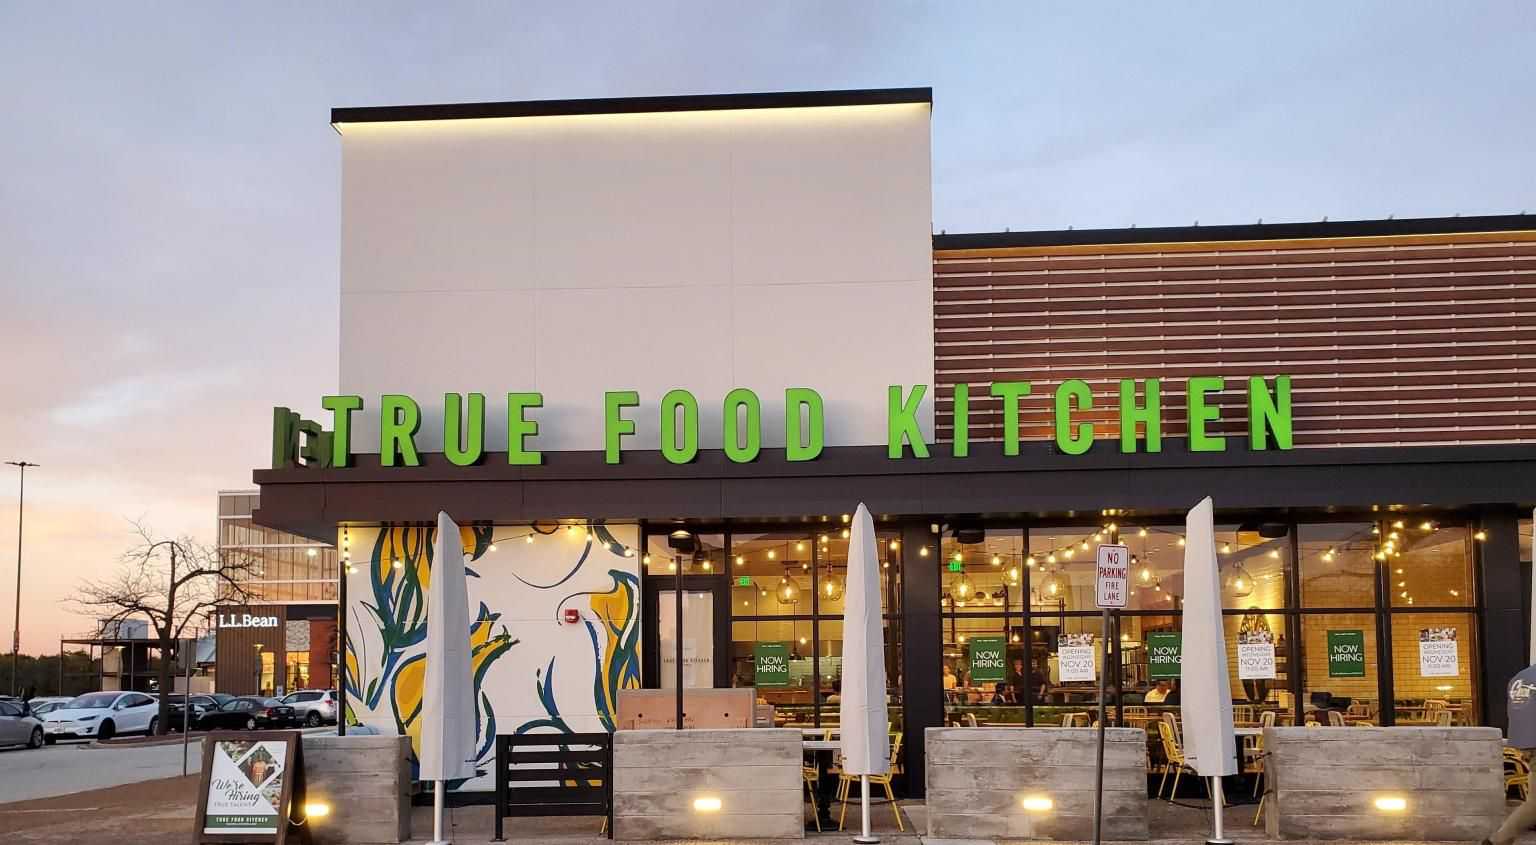 轻食连锁餐厅品牌True Food Kitchen获1亿美元融资